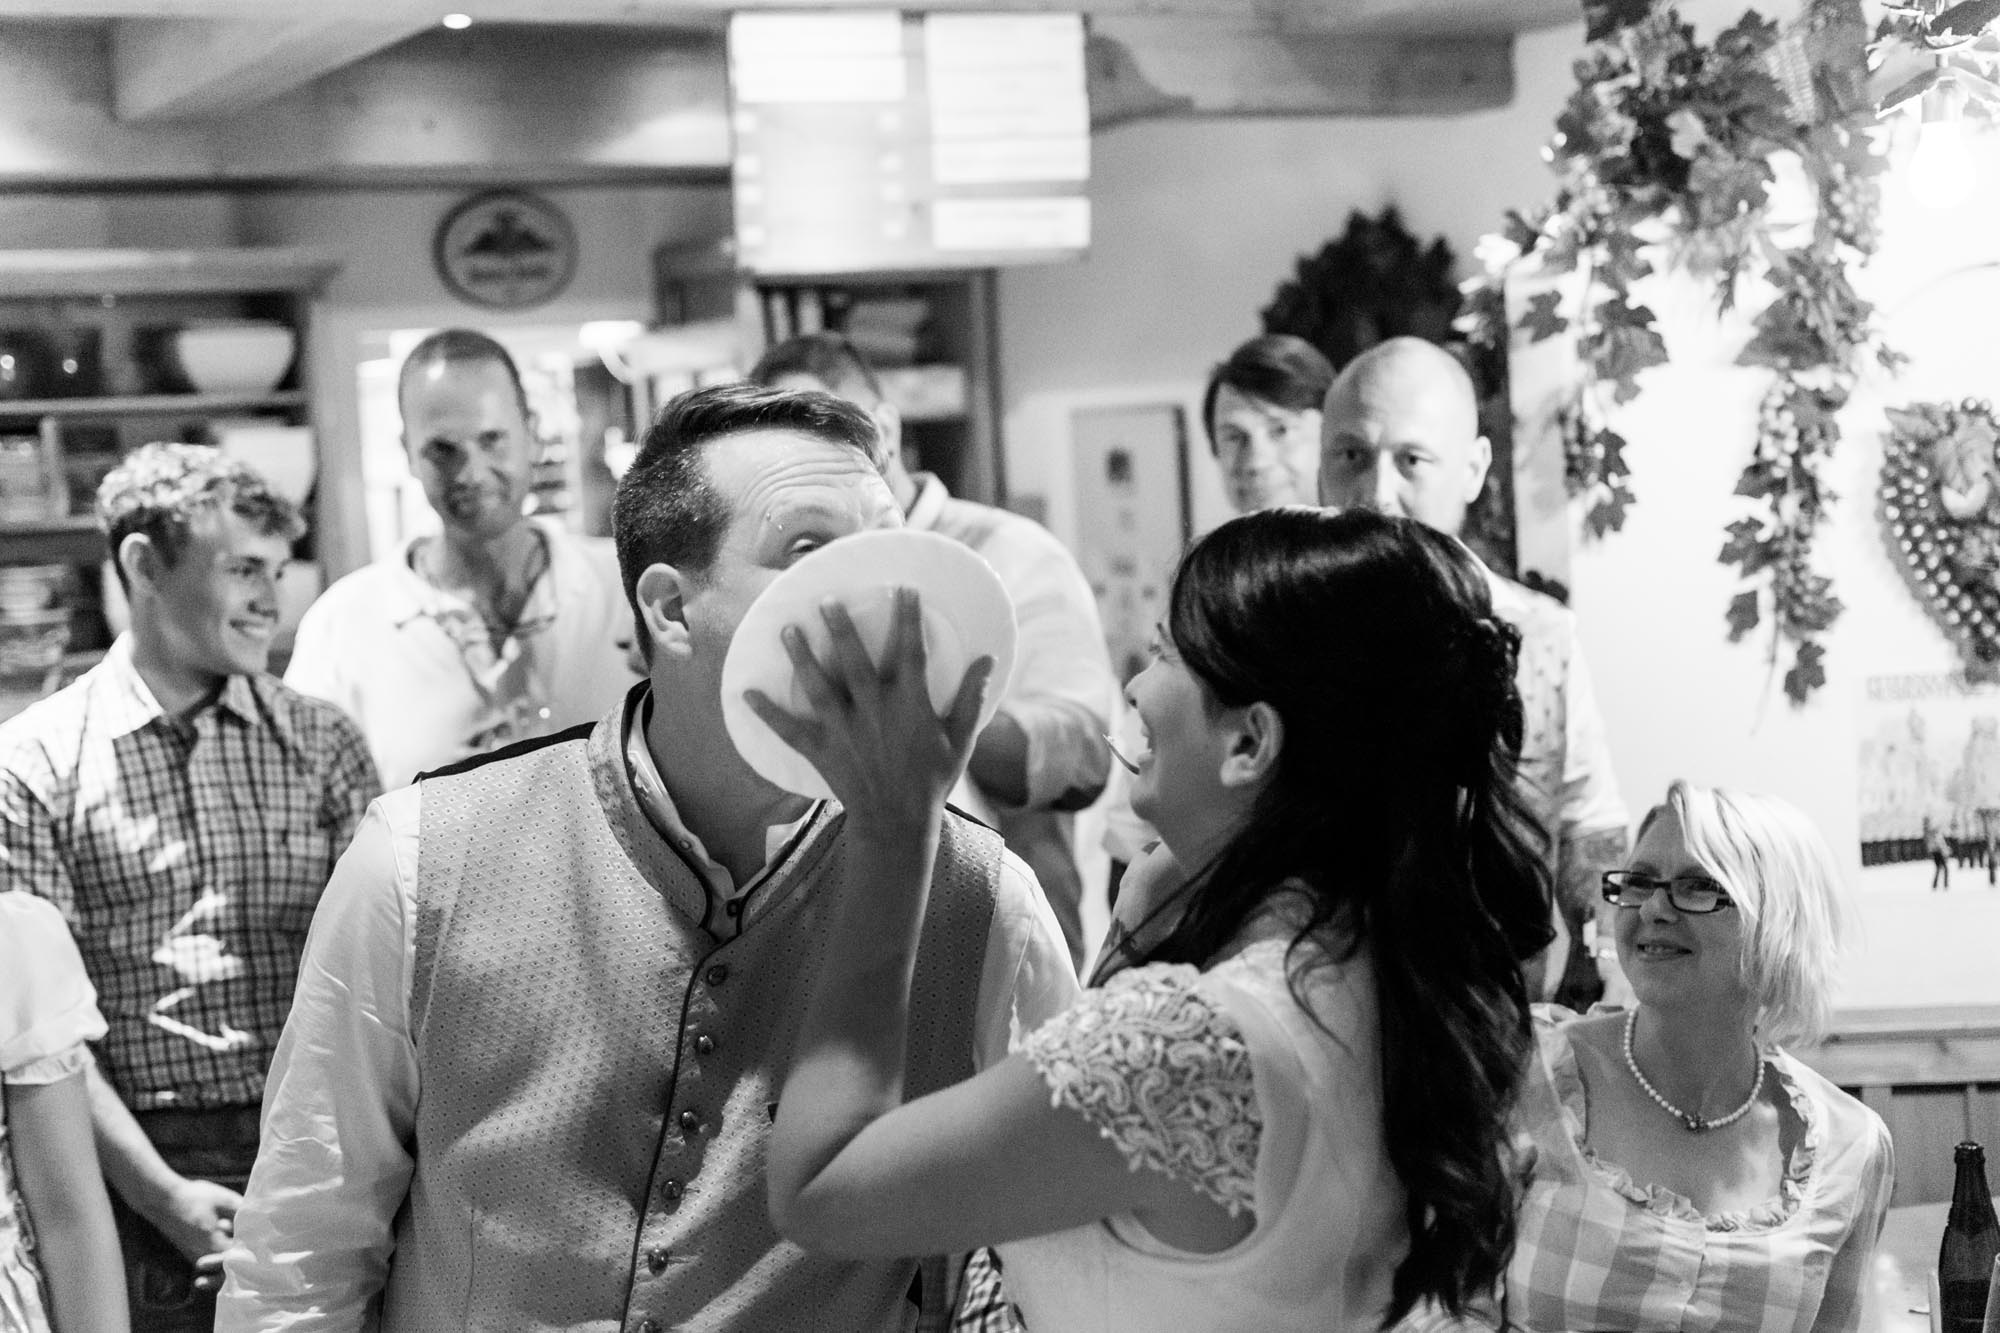 Hochzeitsfotos_Hochzeitsreportage in Wien_Hochzeitstorte_Braut drückt Bräutigam Teller mit Hochzeitstorte ins Gesicht